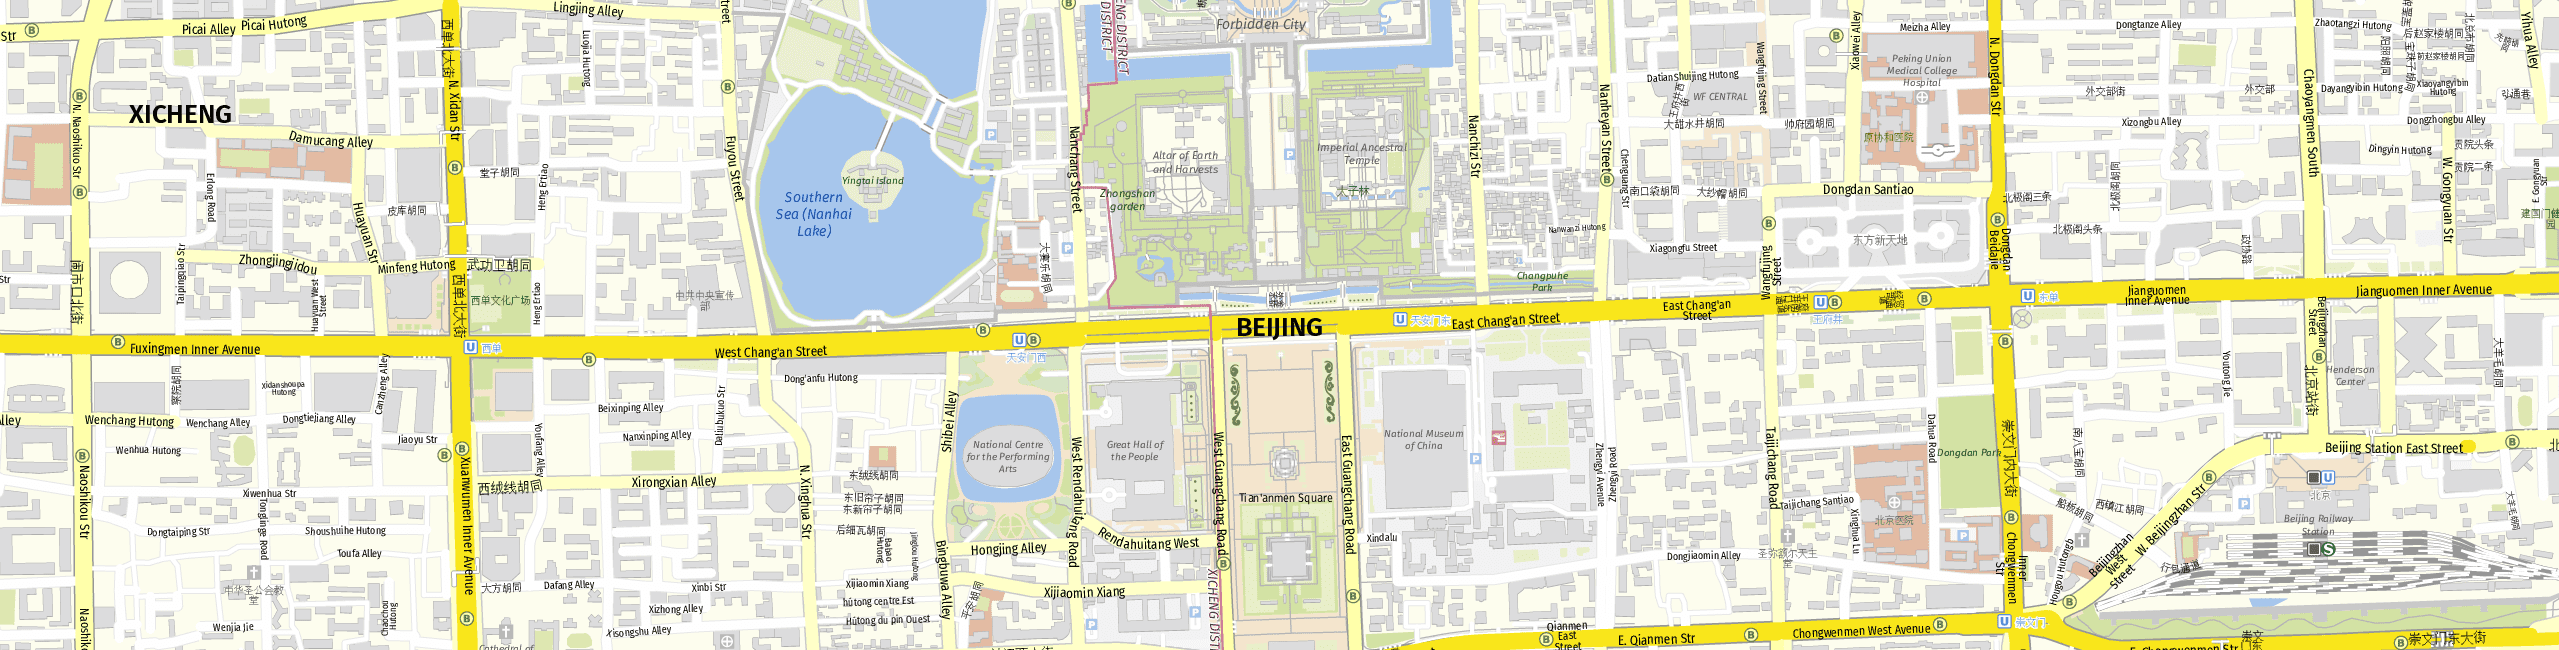 Stadtplan Beijing zum Downloaden.